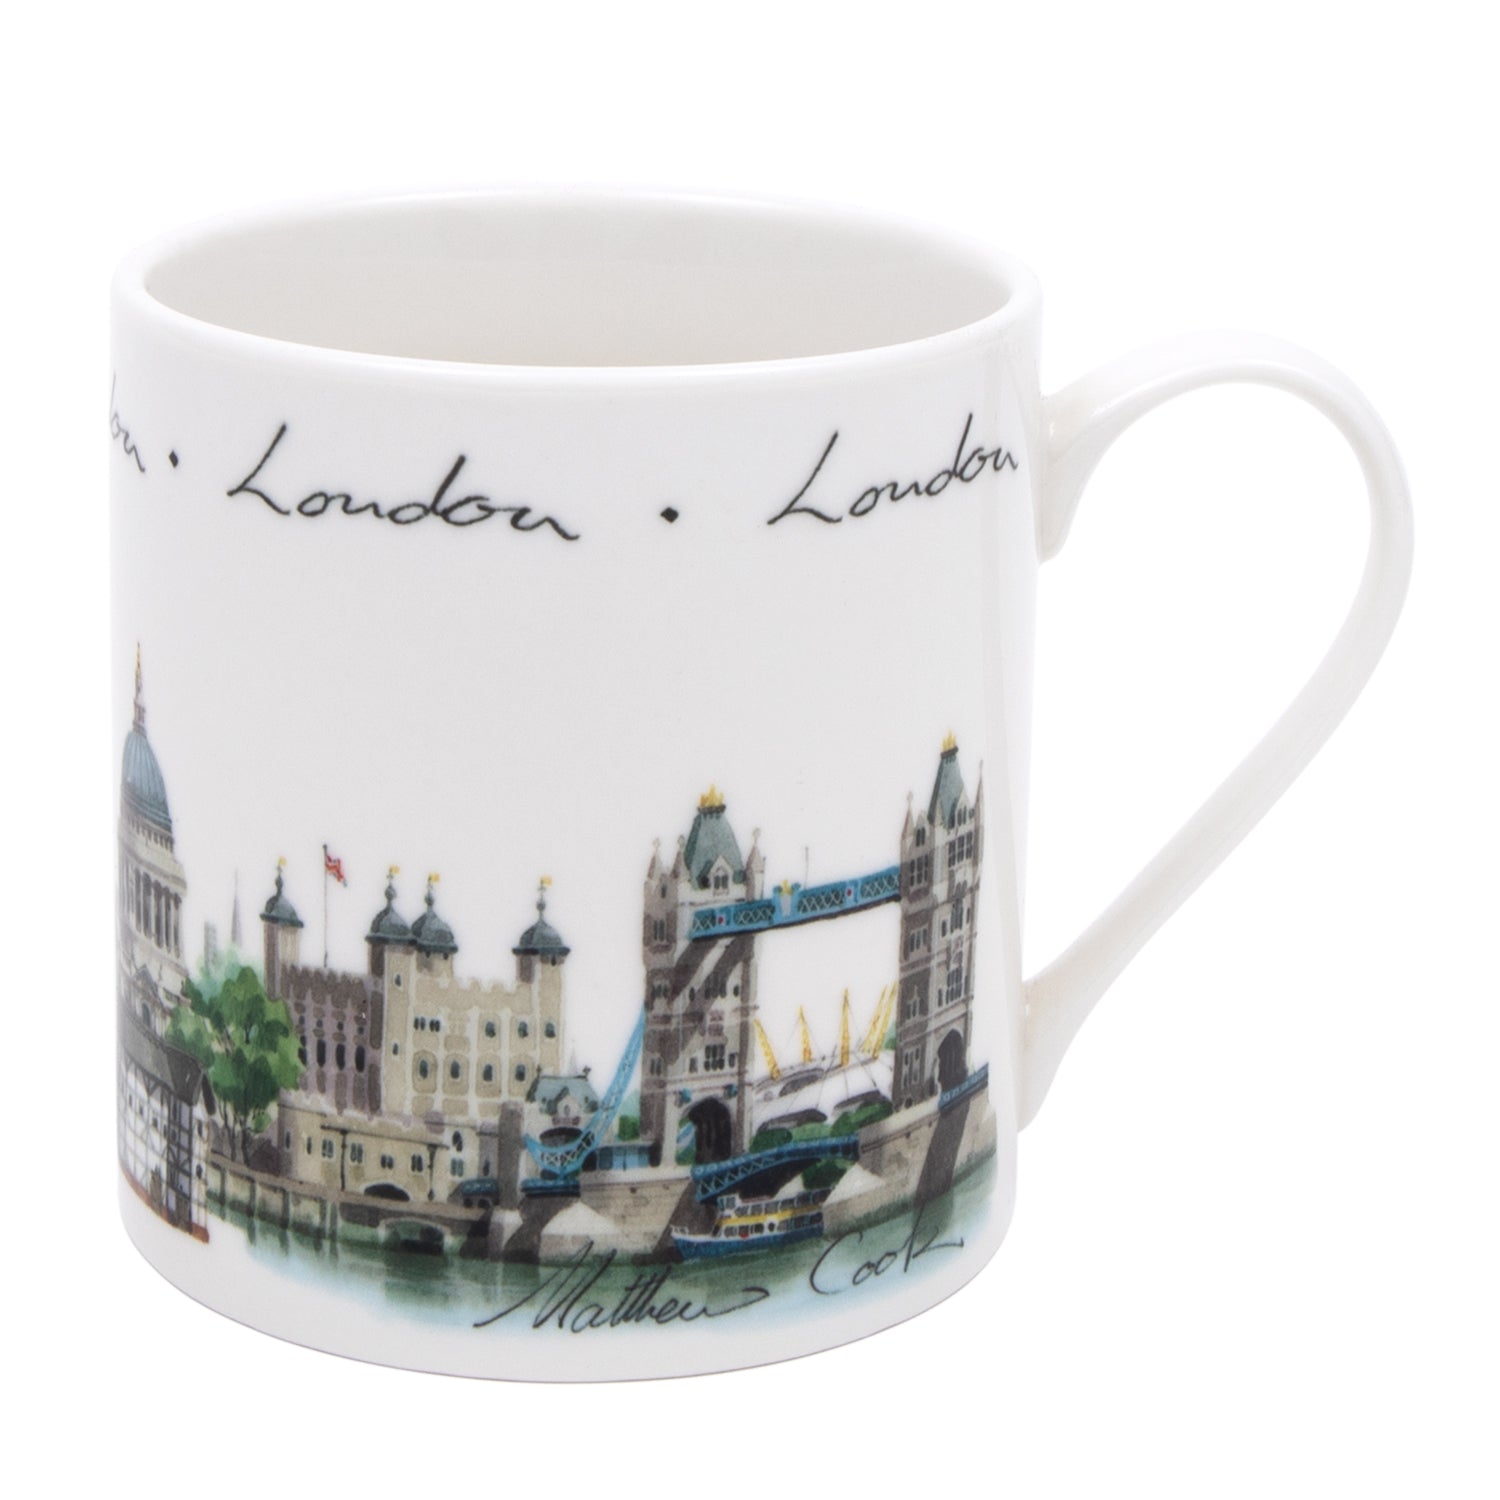 London Landmark Mug 1